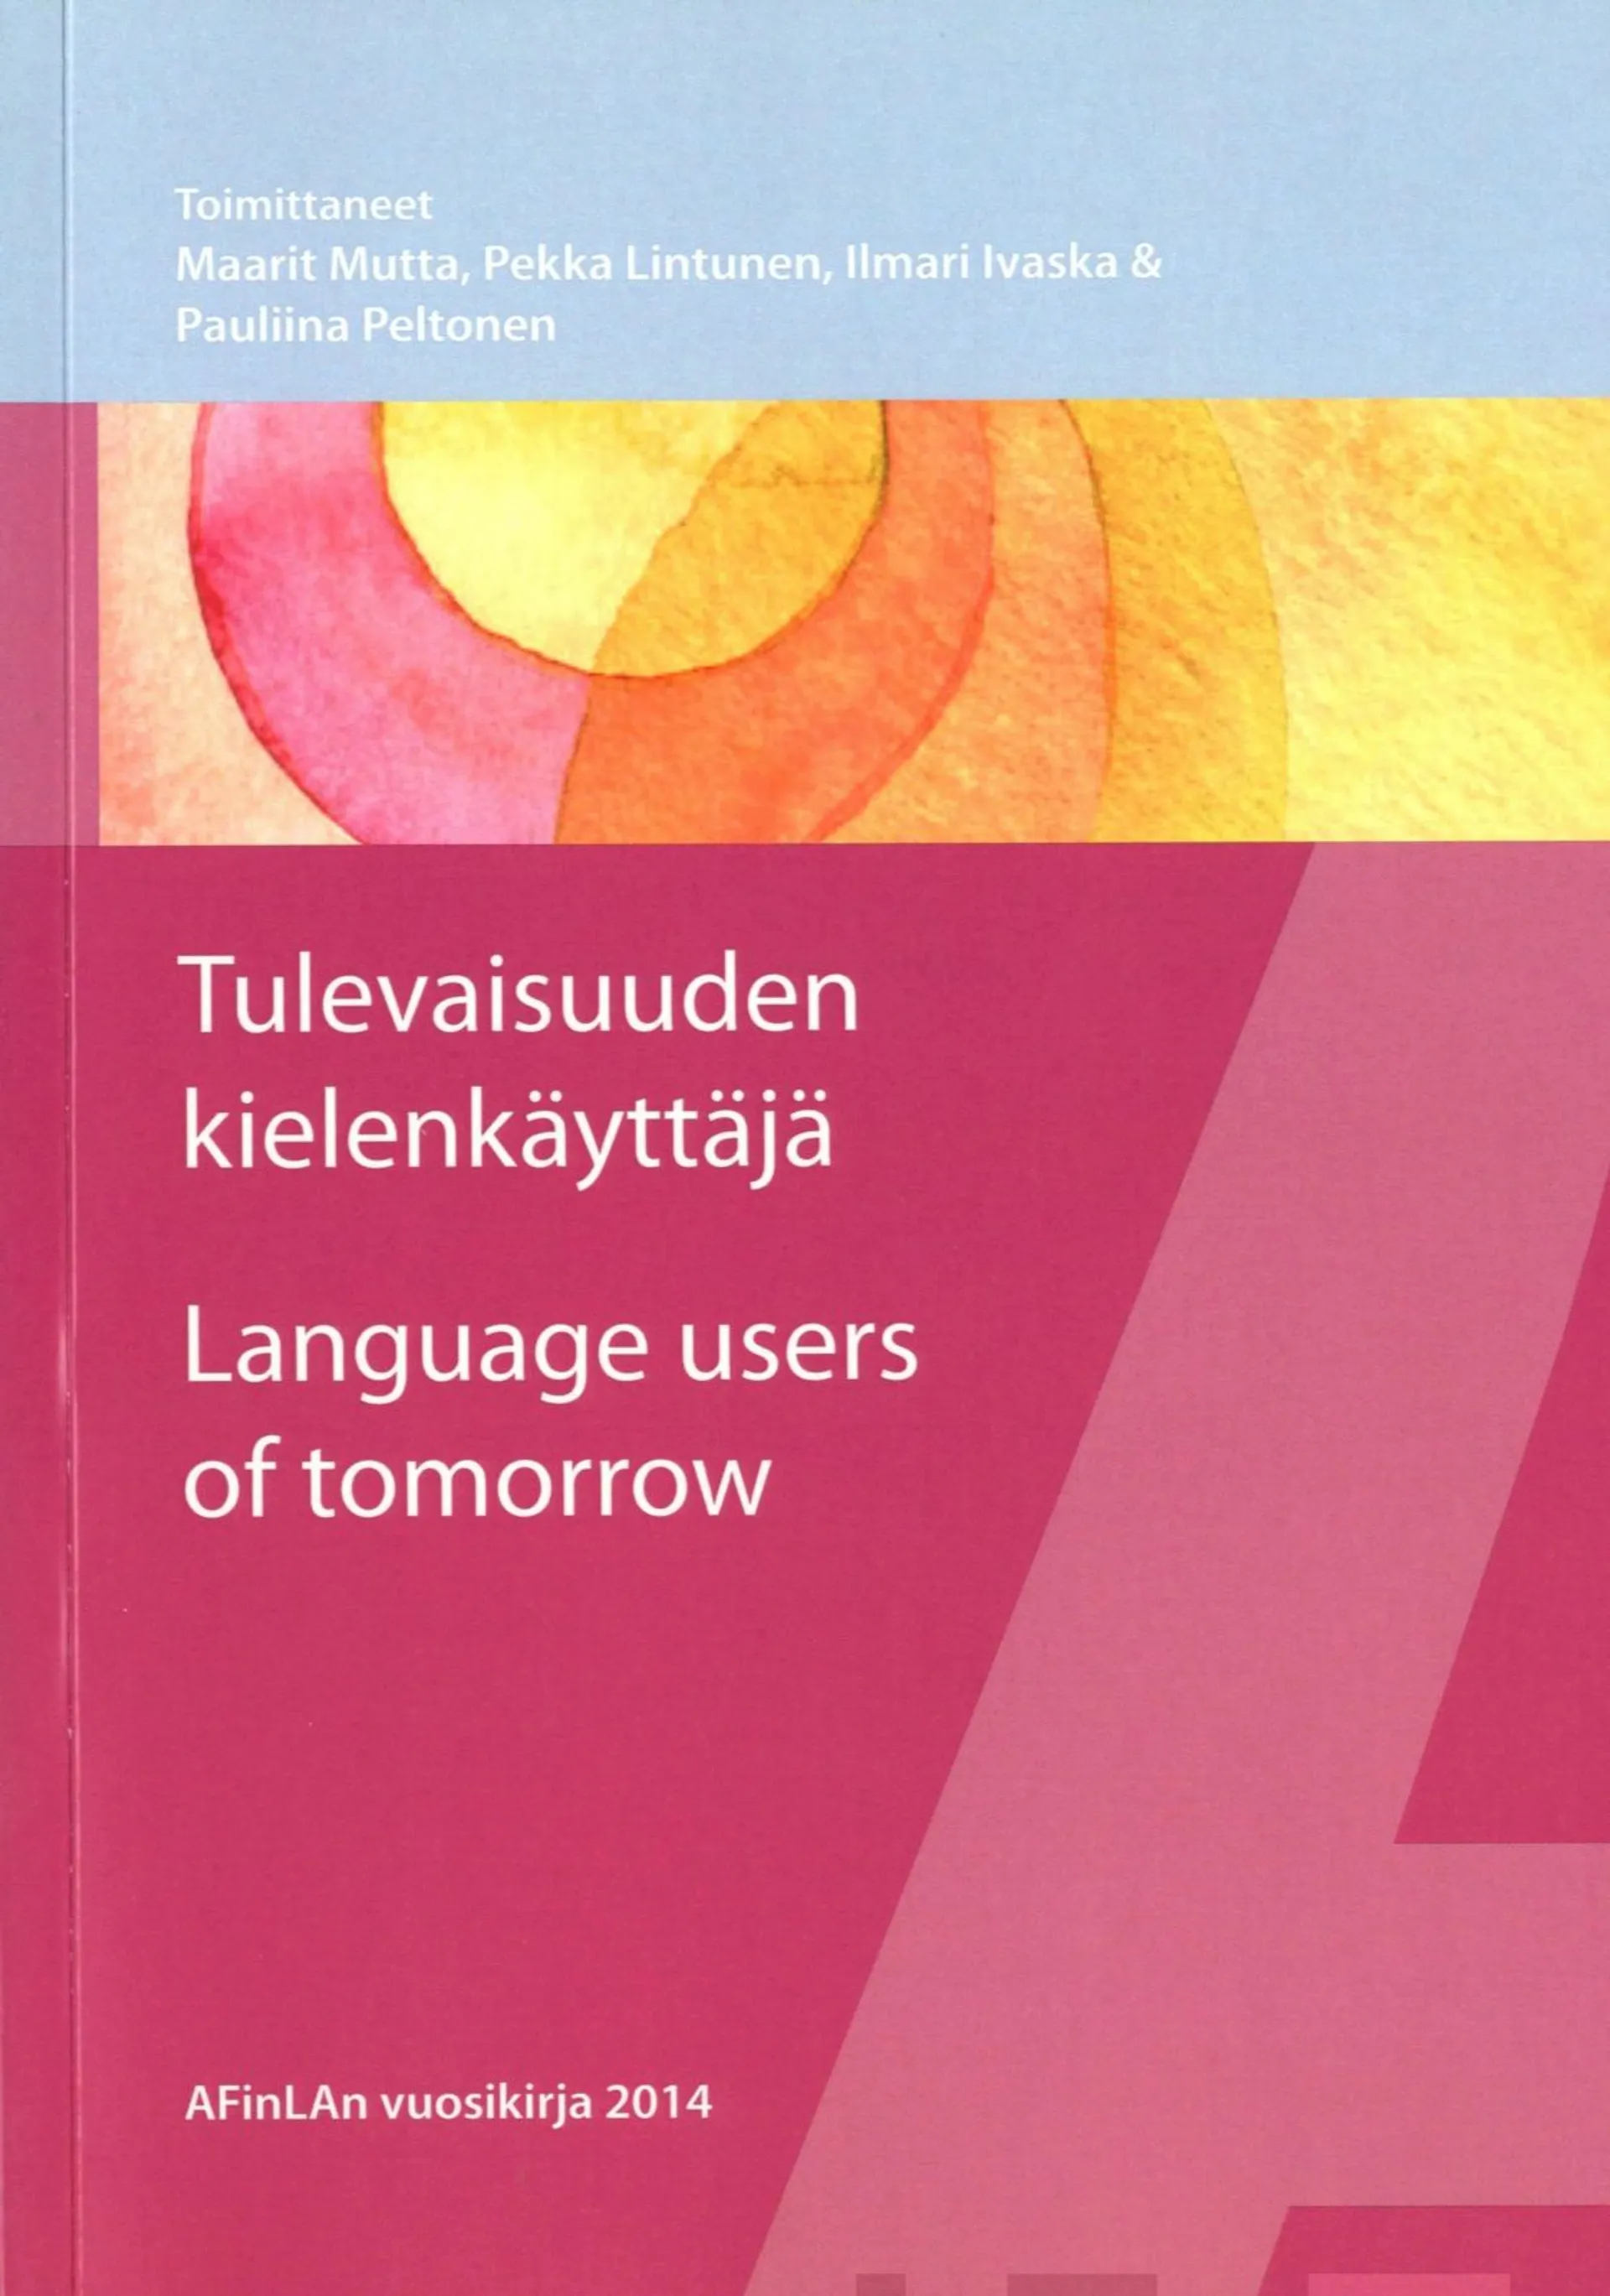 Tulevaisuuden kielenkäyttäjä - Language users of tomorrow